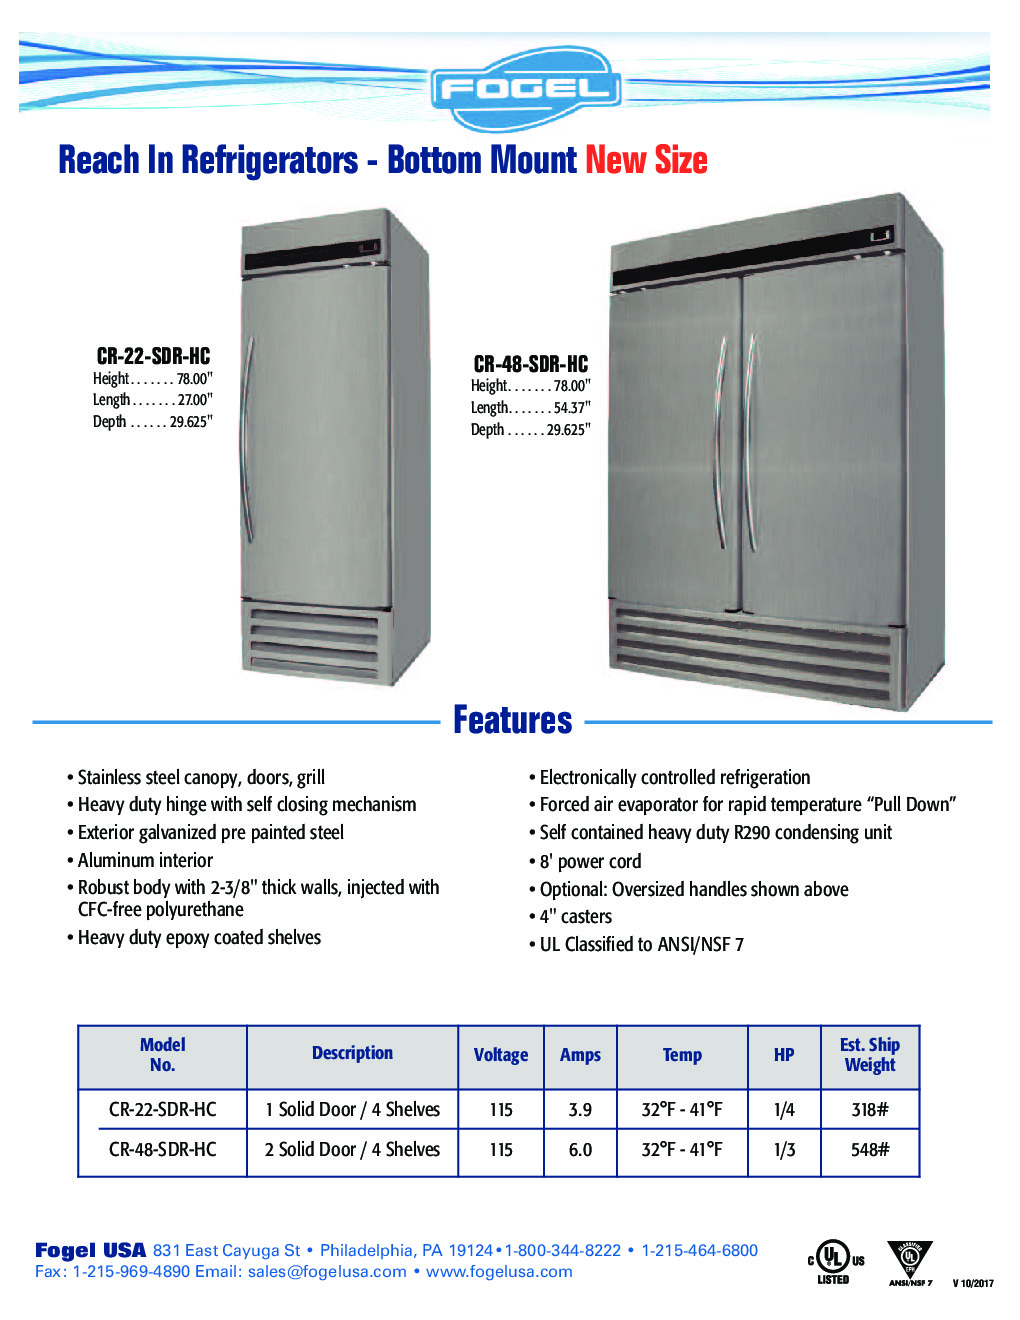 Fogel USA CR-48-SDR-HC Reach-In Refrigerator